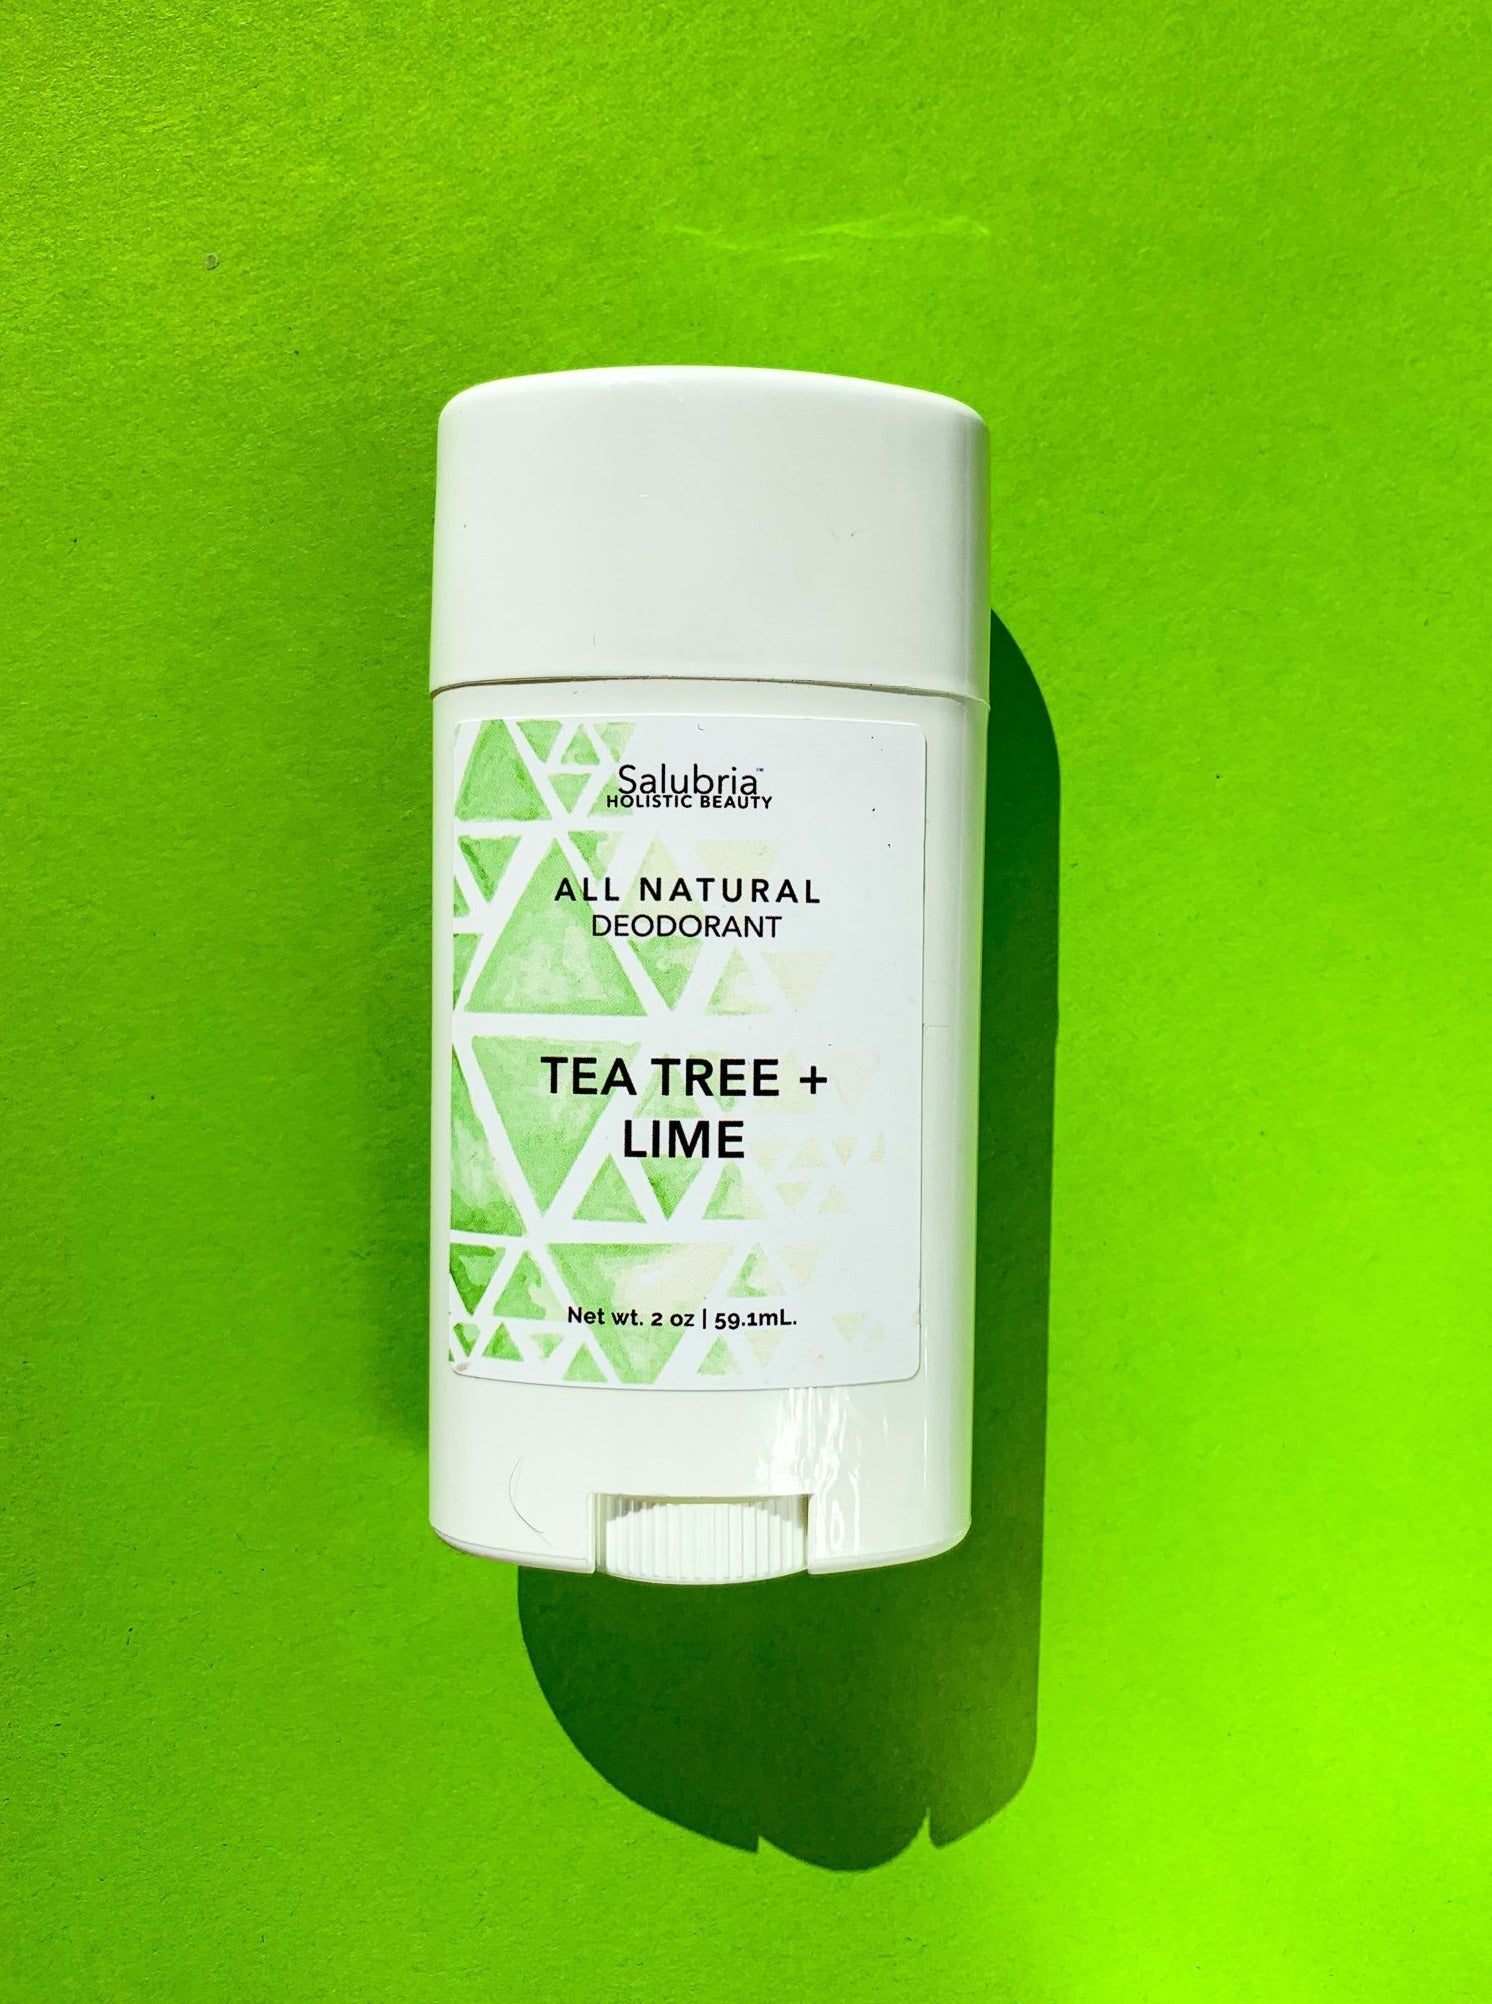 Tea Tree + Lime Deodorant - Salubria 